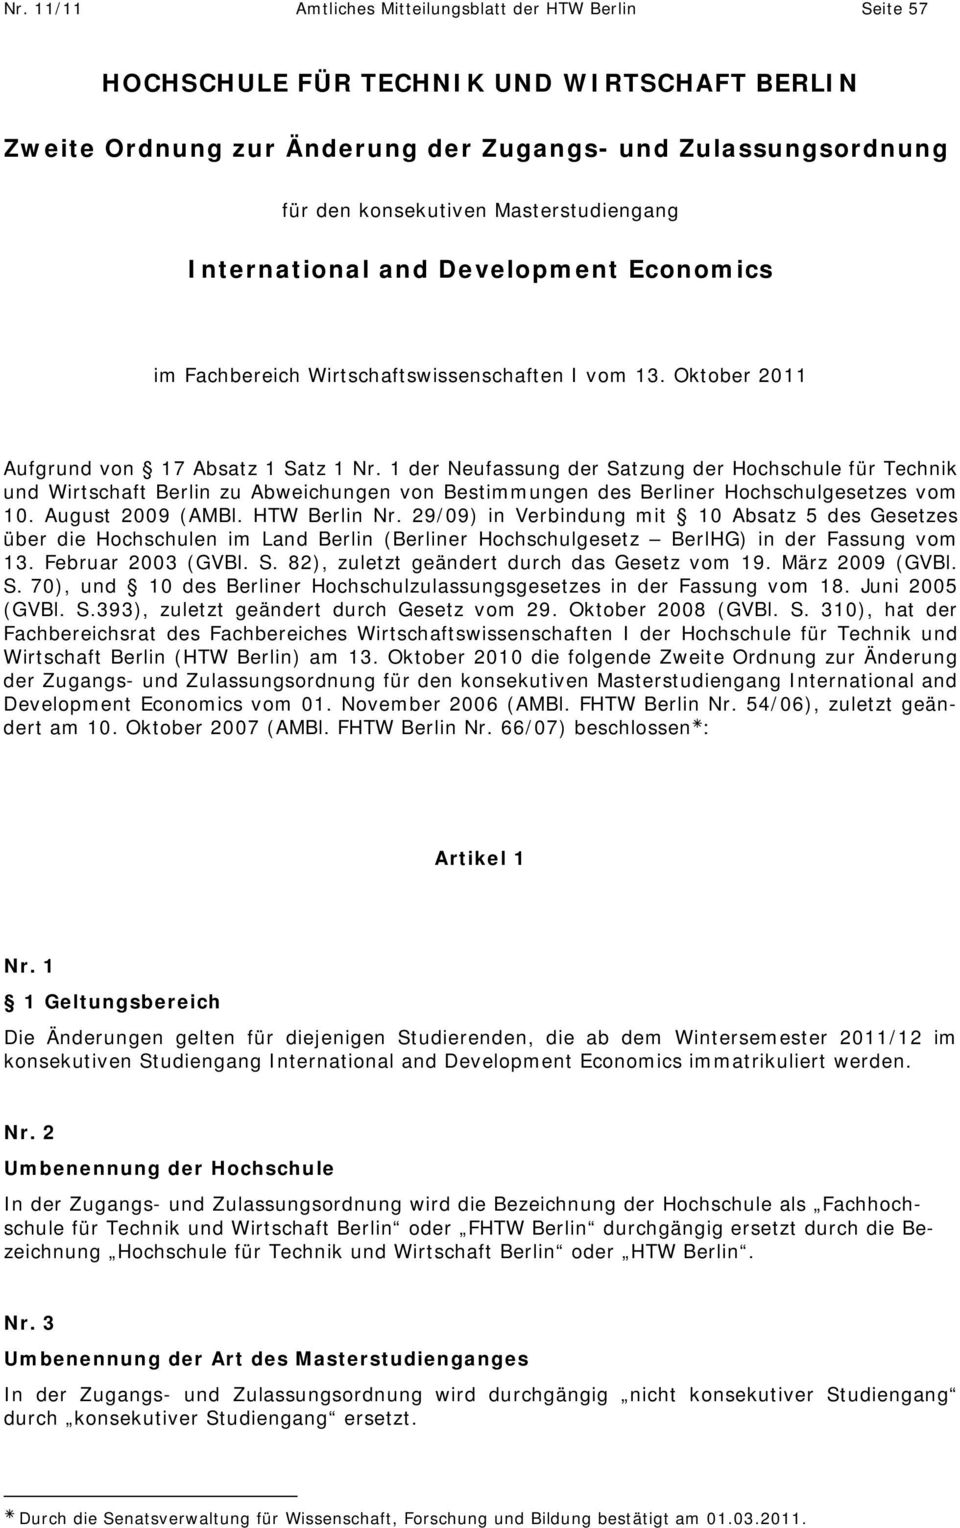 1 der Neufassung der Satzung der Hochschule für Technik und Wirtschaft Berlin zu Abweichungen von Bestimmungen des Berliner Hochschulgesetzes vom 10. August 2009 (AMBl. HTW Berlin Nr.